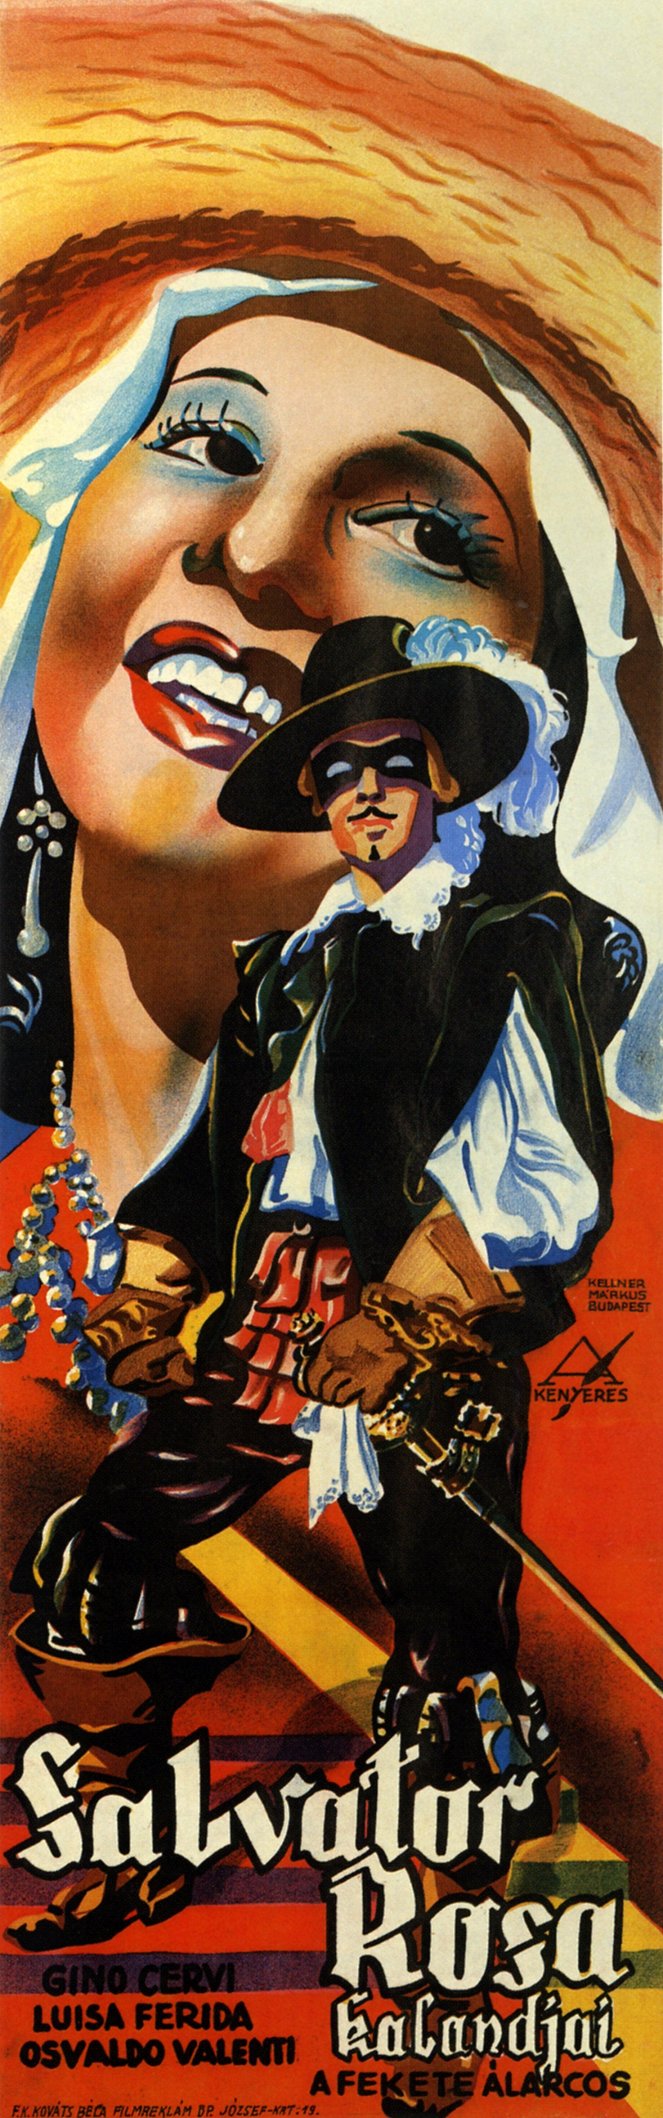 Salvator Rosa kalandjai - Plakátok